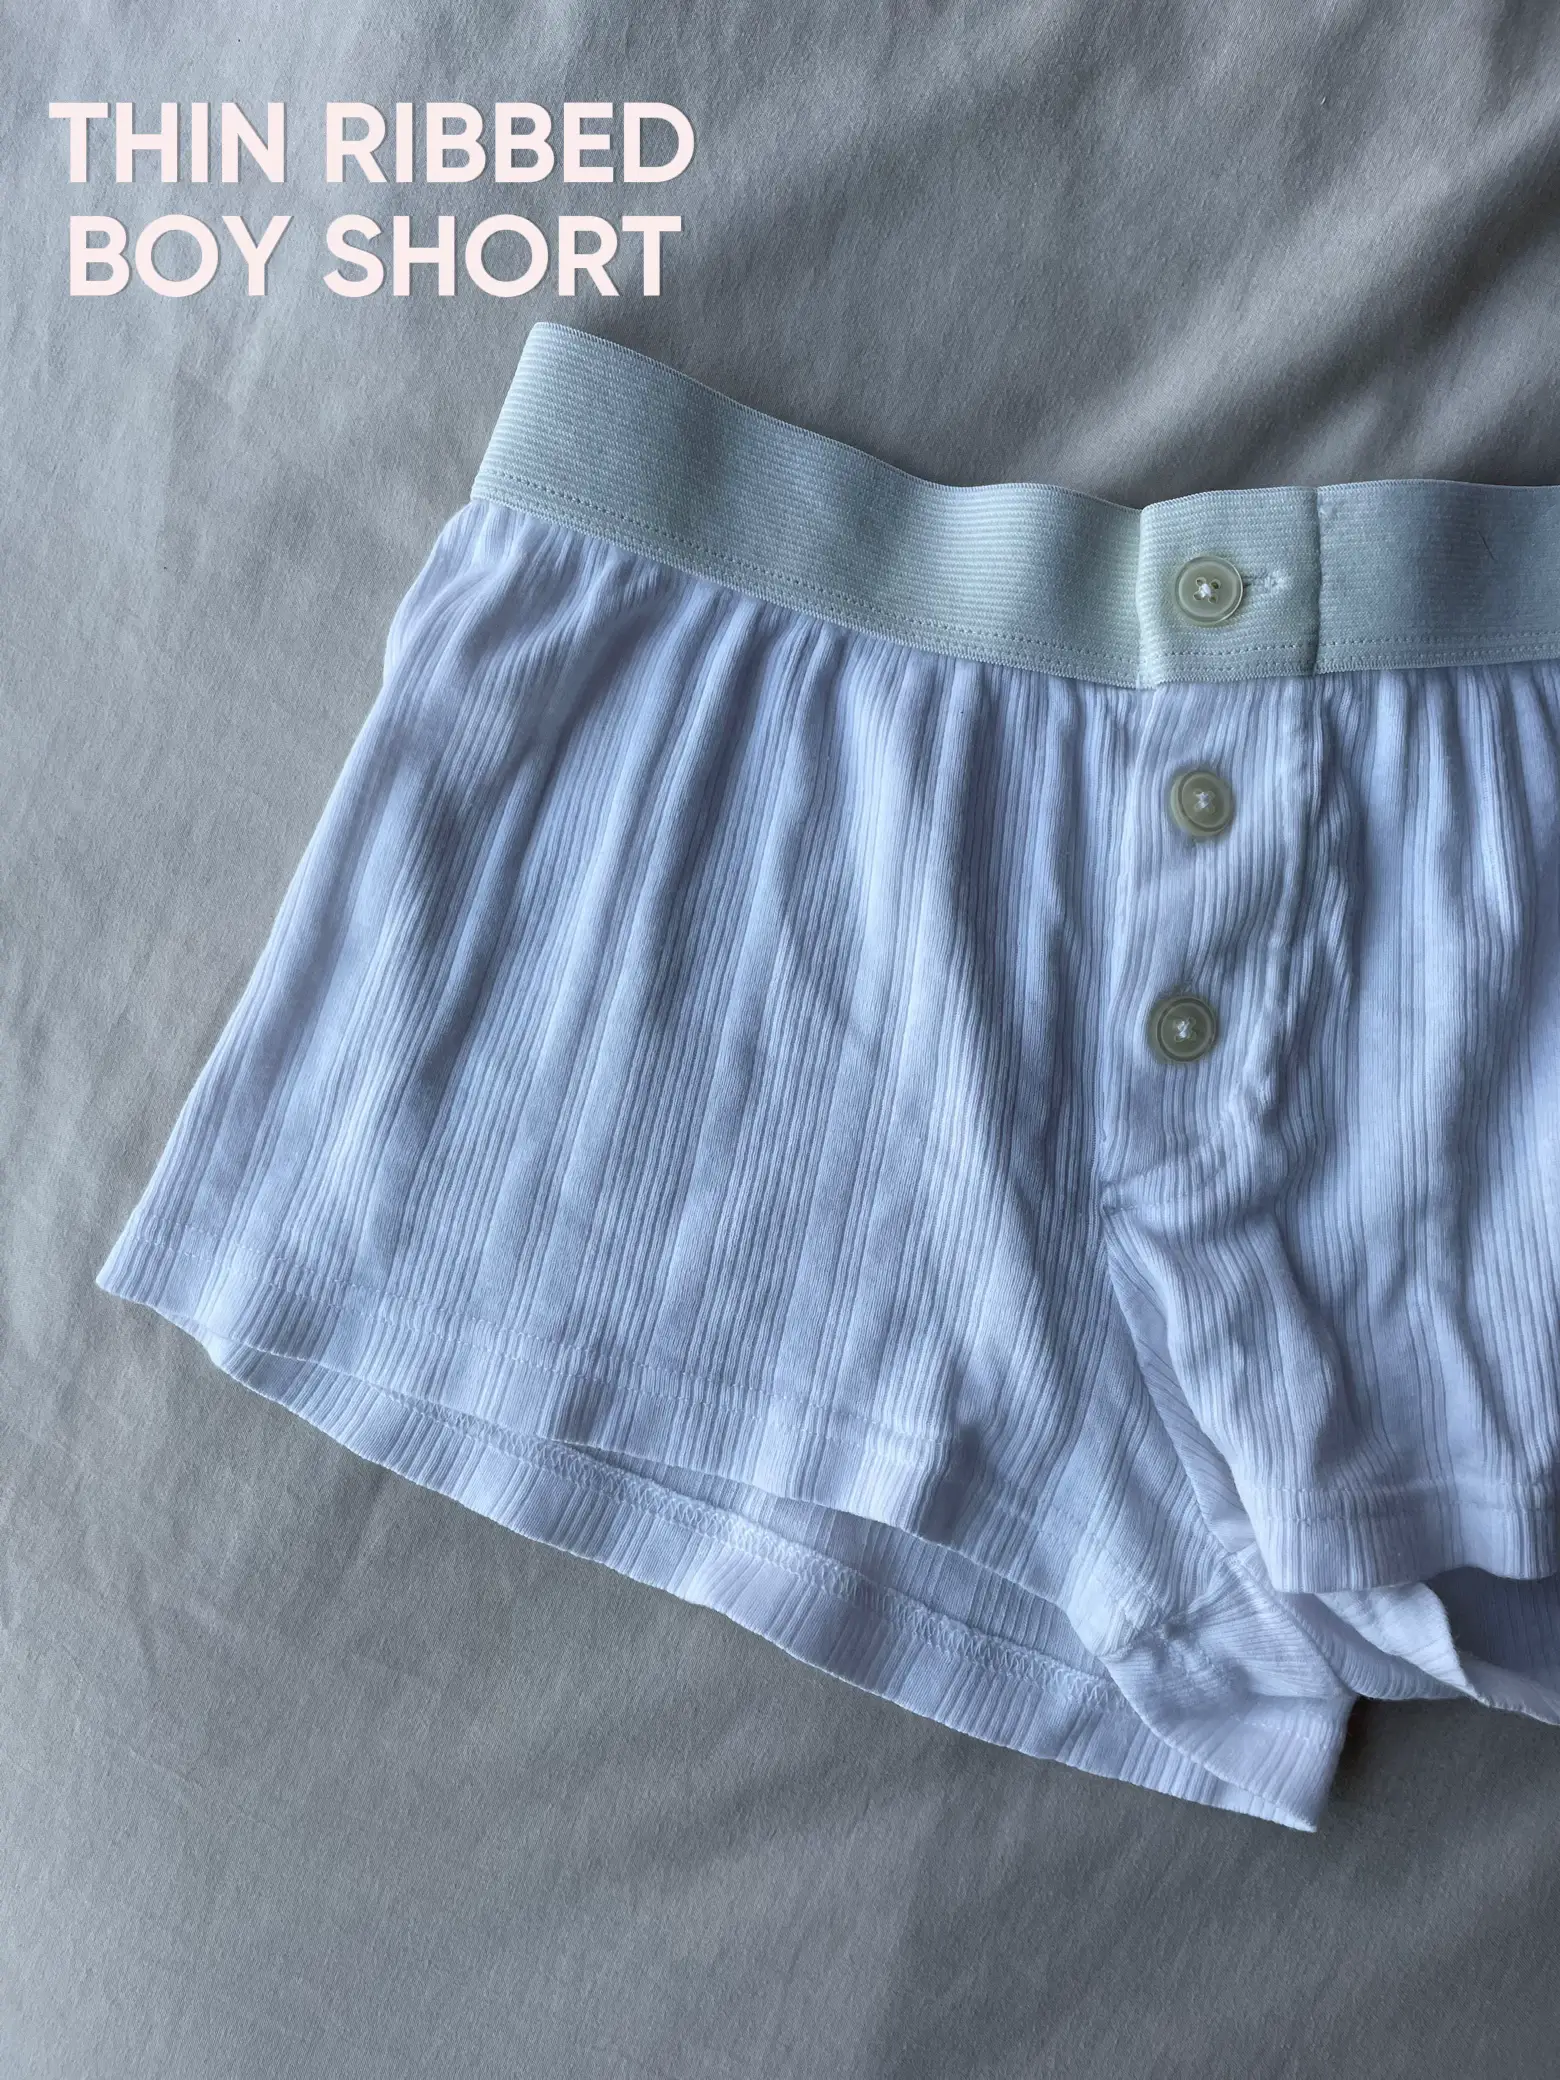 Boy Short Heart Underwear – Brandy Melville Australia